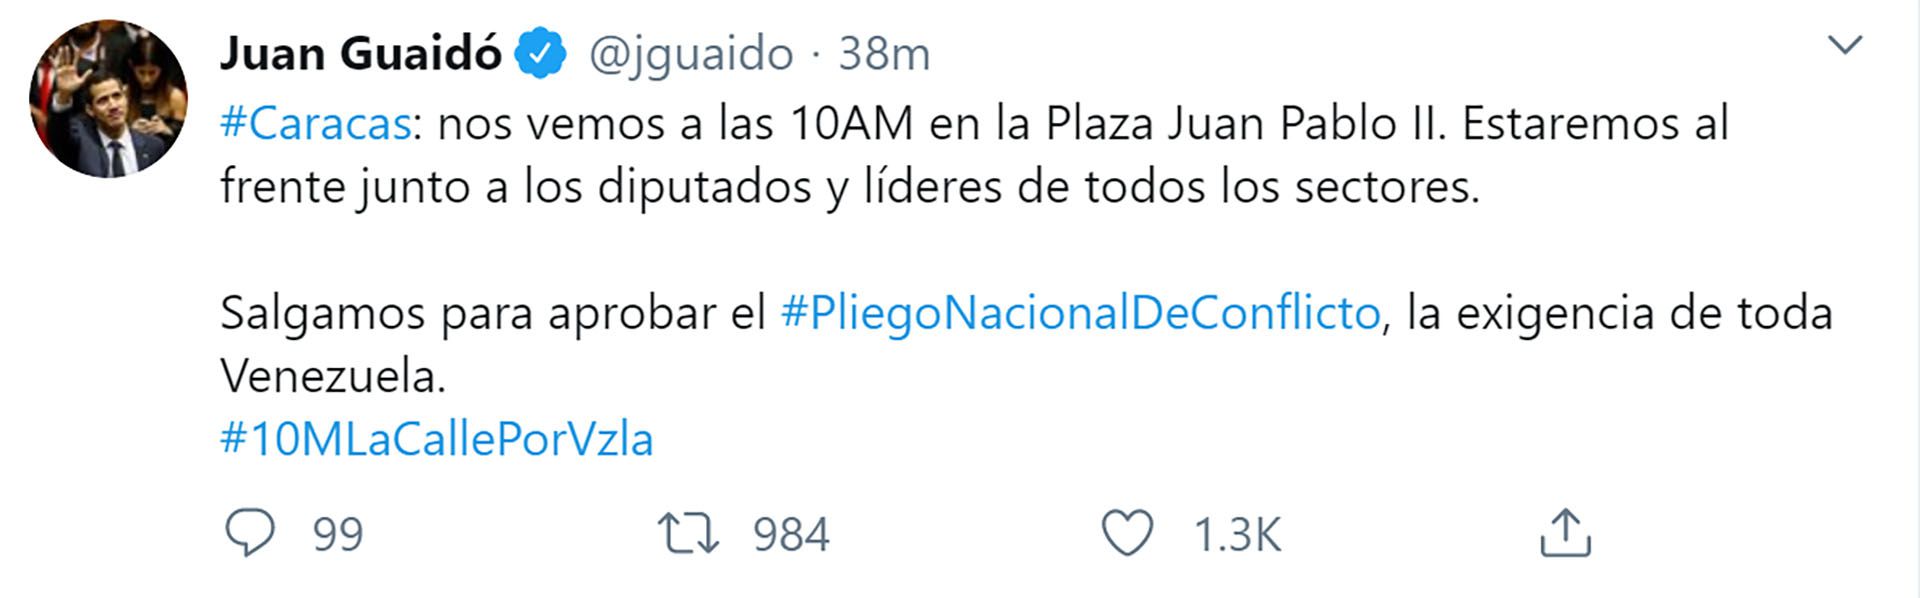 El mensaje de Juan Guaidó en Twitter